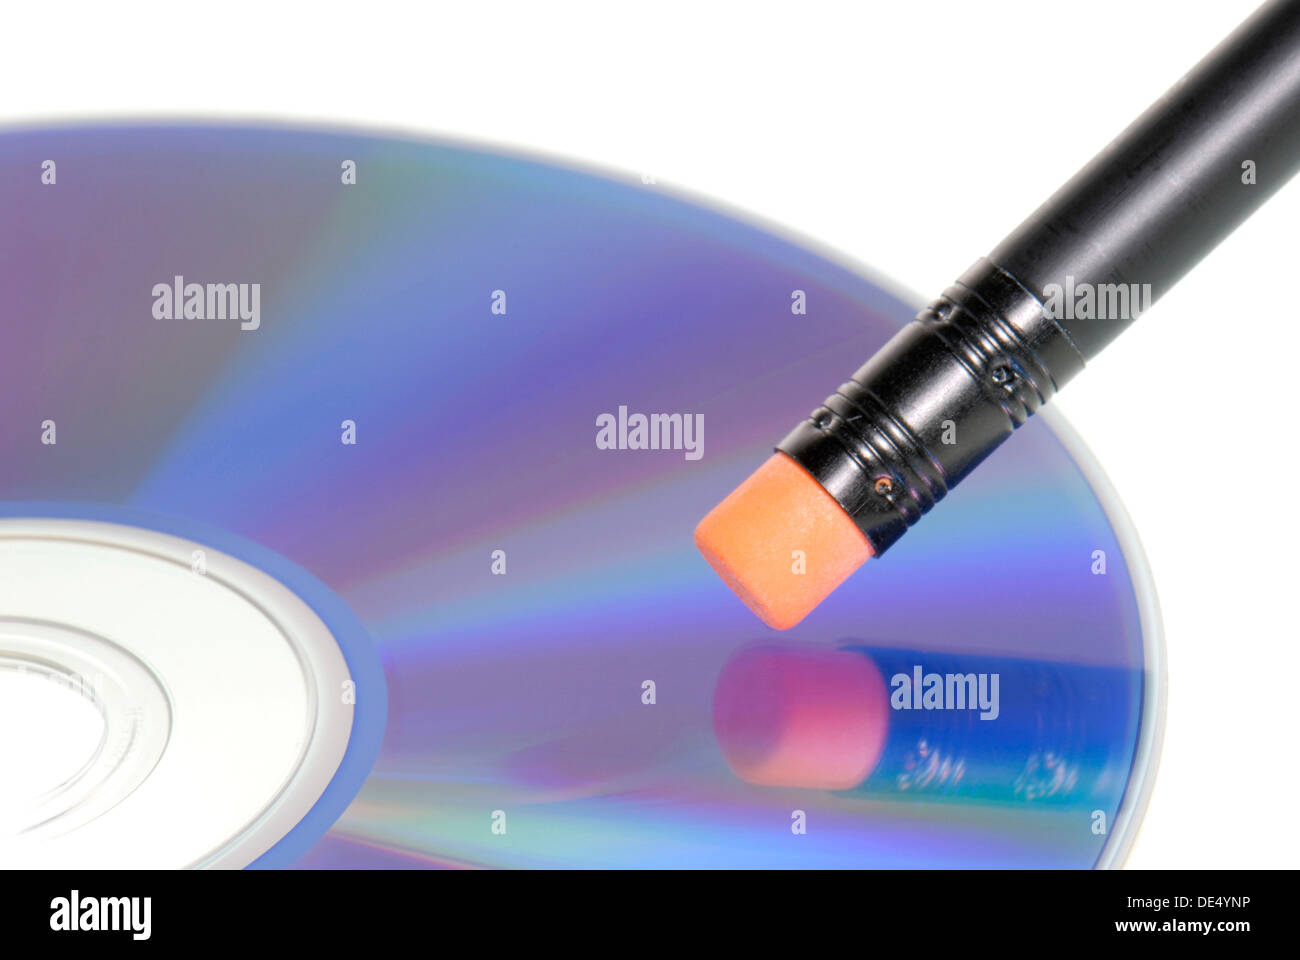 Eraser on data CD, symbolic image for erasing data Stock Photo